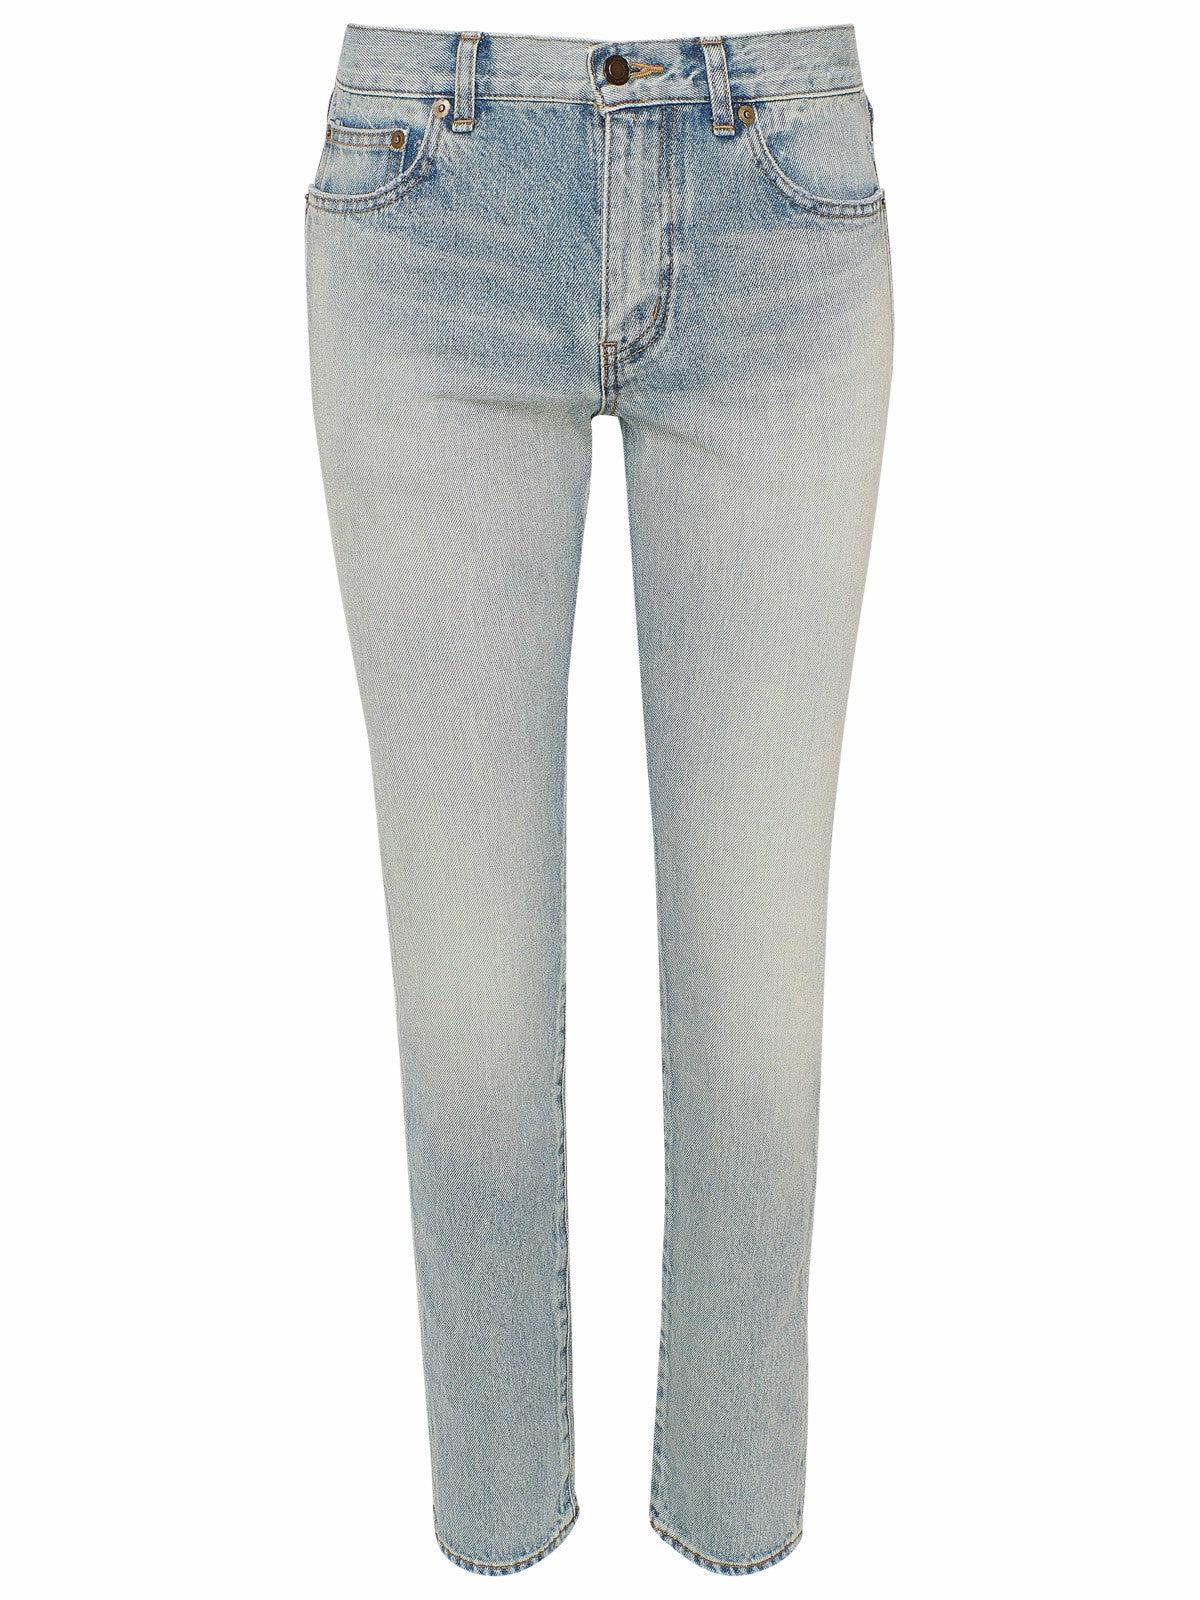 Saint Laurent 80s Vintage Boyfriend Jeans